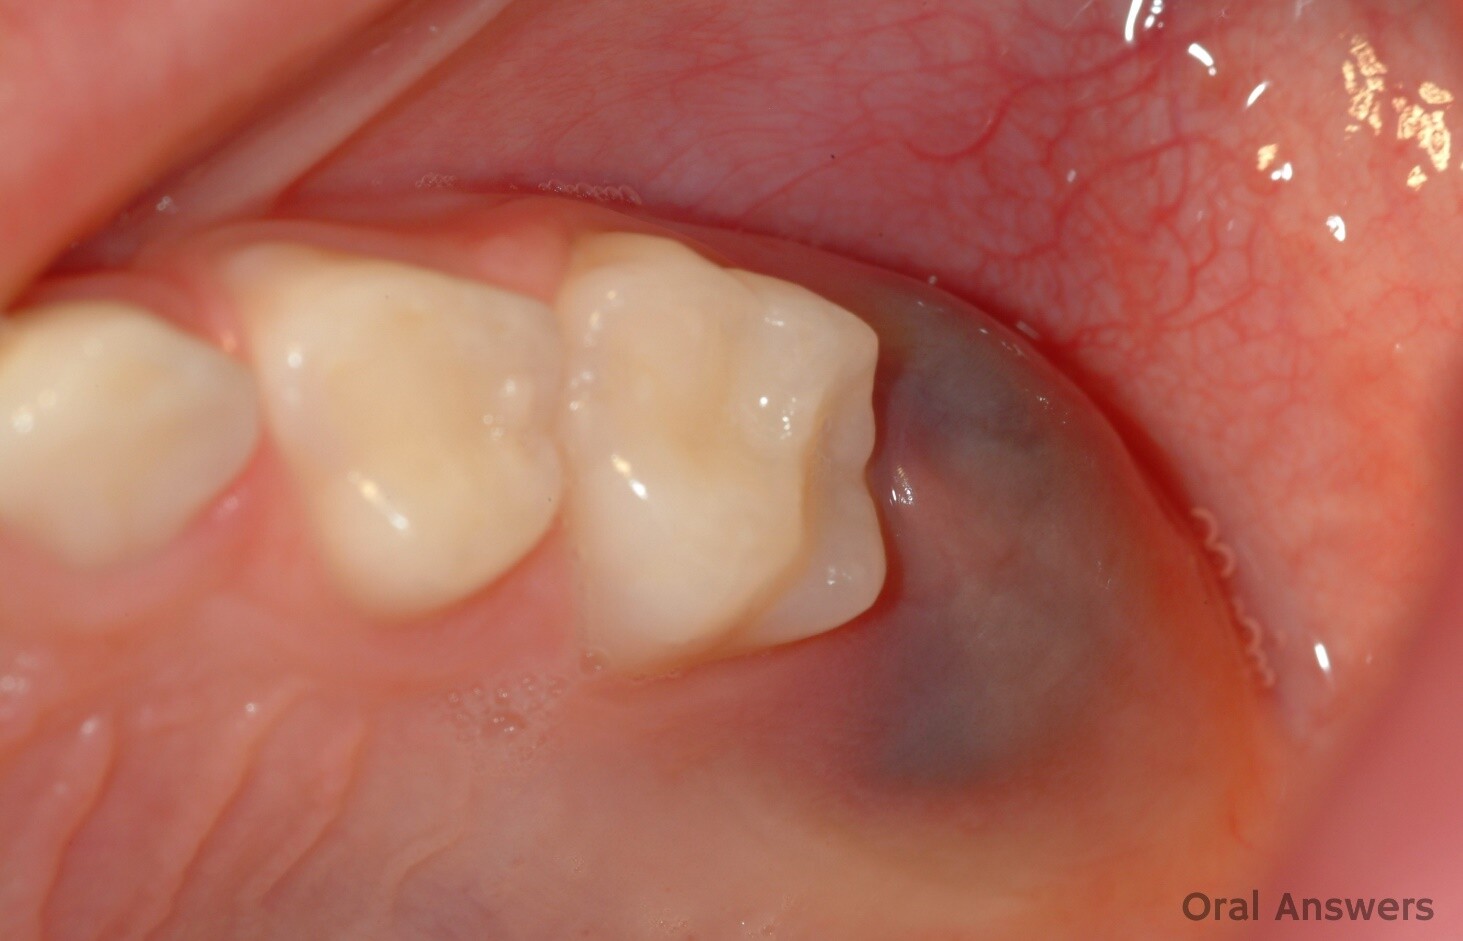 Nang mọc răng là một túi mô mềm chứa đầy chất lỏng của răng mới mọc, xuất hiện trước khi răng mọc, thường có màu xanh lam hoặc trong. (nguồn: oralanswers.com)